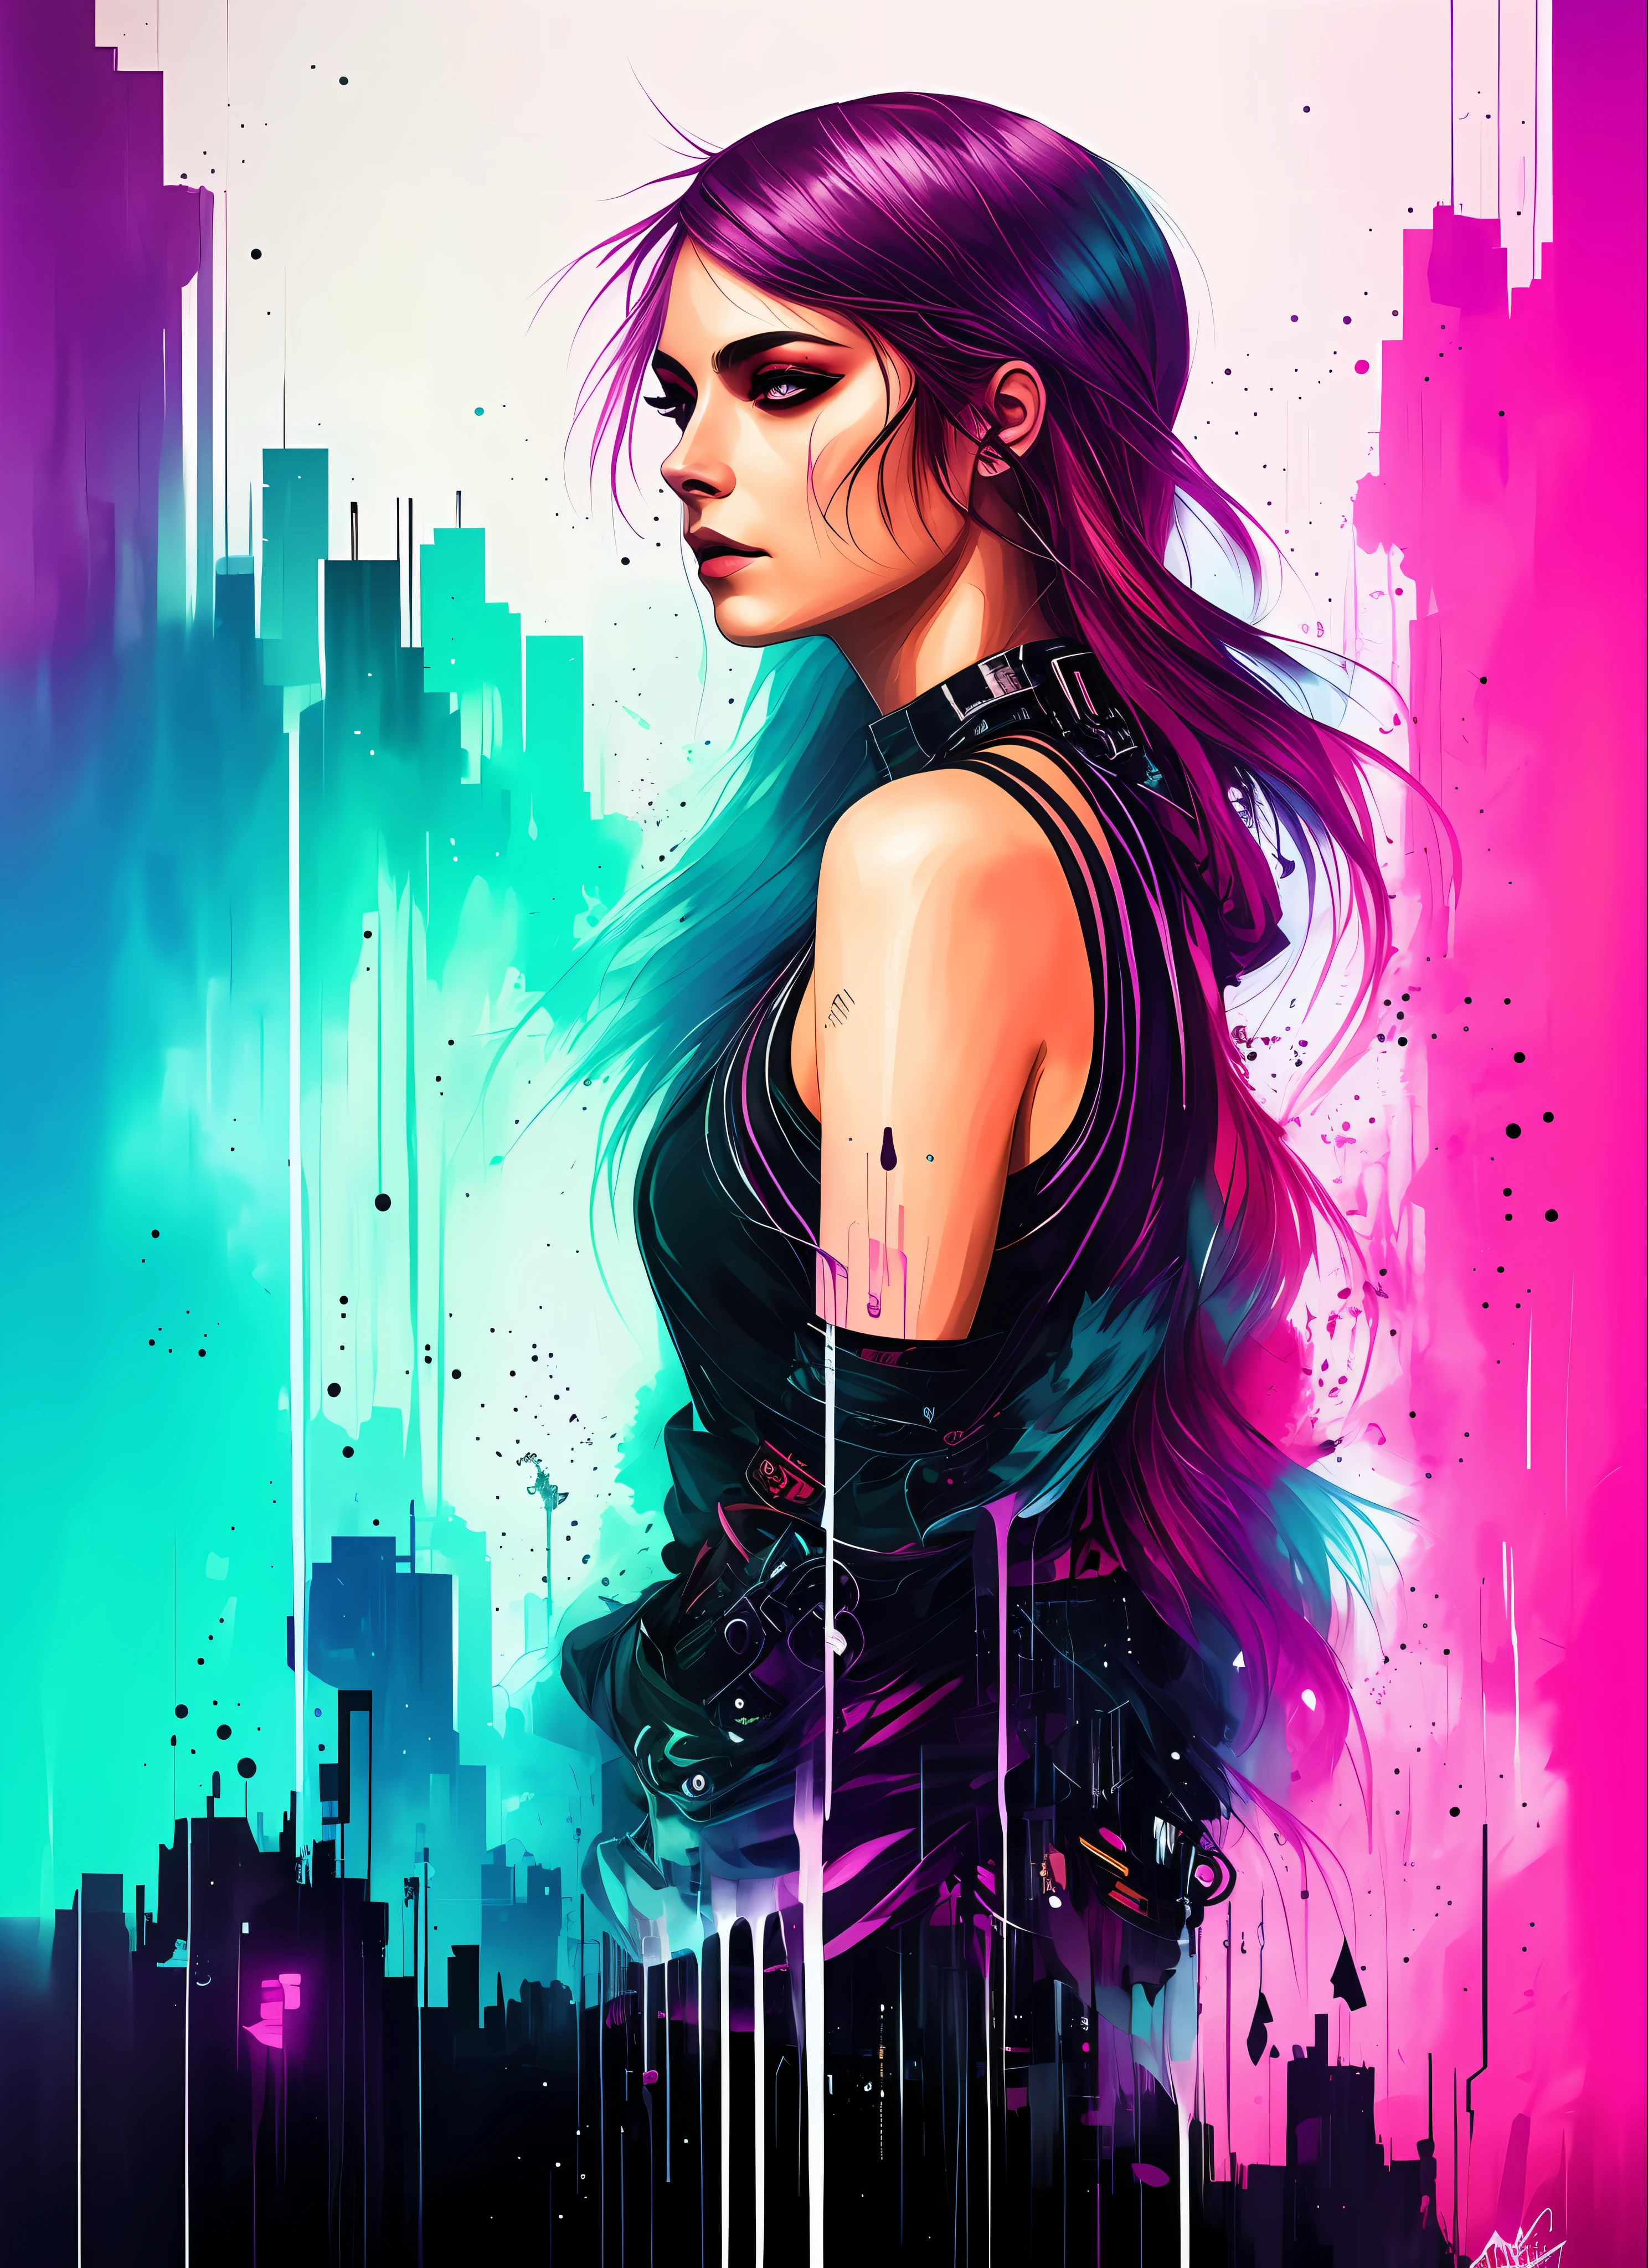 Synthwave-Frau im Swpunk-Stil von Agnes Cecile, leuchtendes Design, Neonfarben, Tinte tropft, cyberpunk city lights